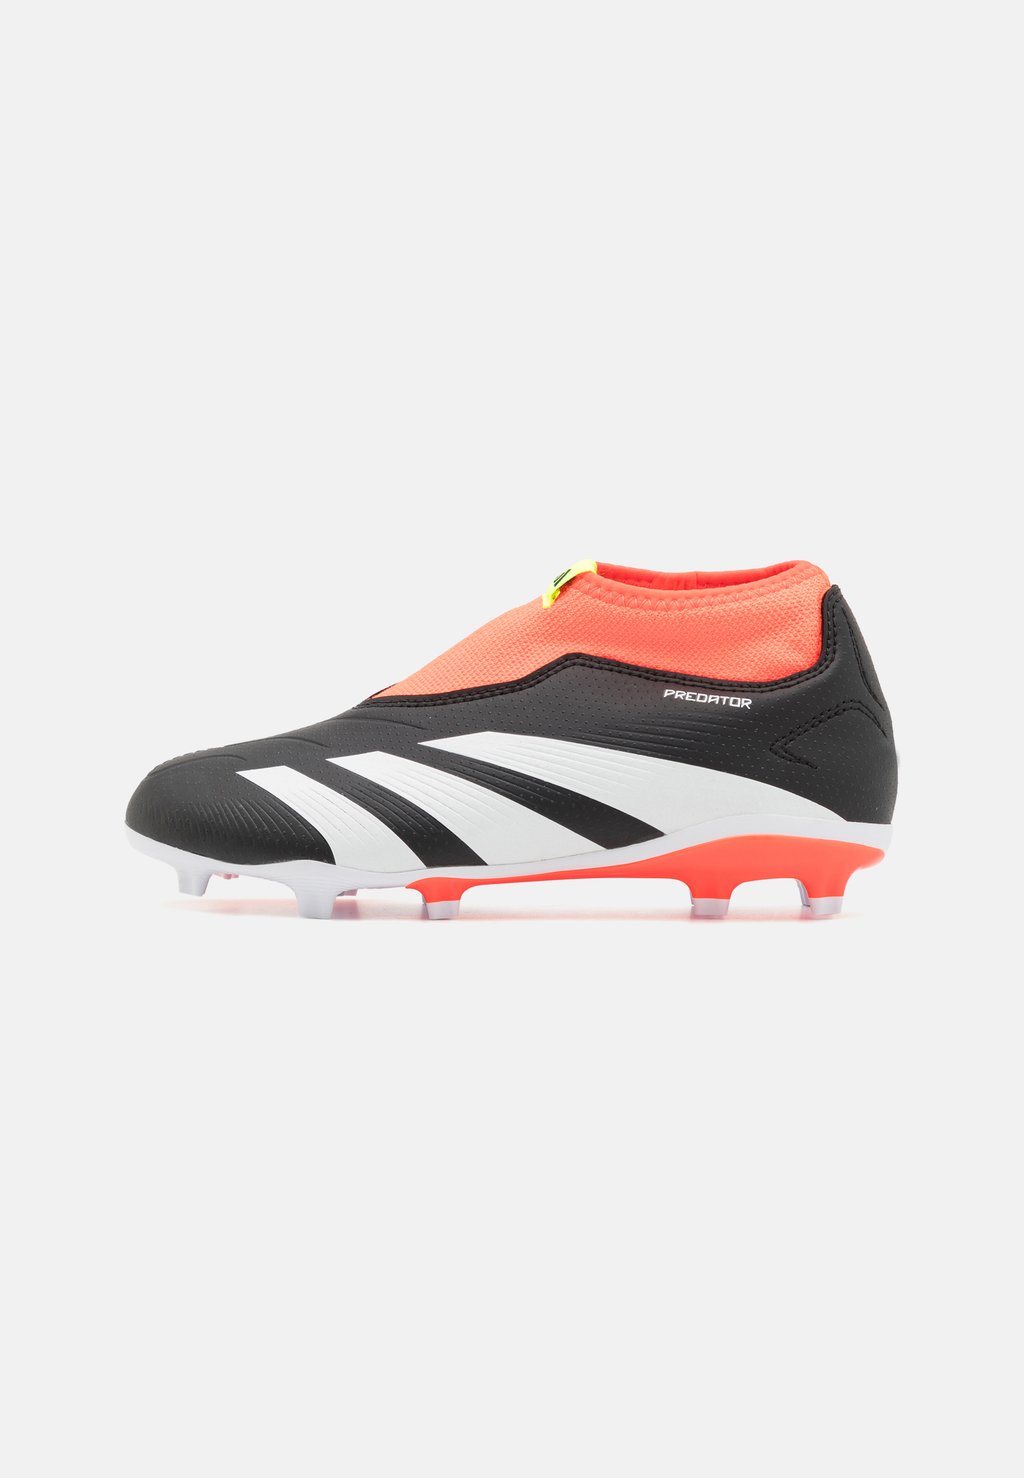 Футбольные бутсы с шипами Predator League Laceless Fg Unisex Adidas, цвет core black/footwear white/solar red